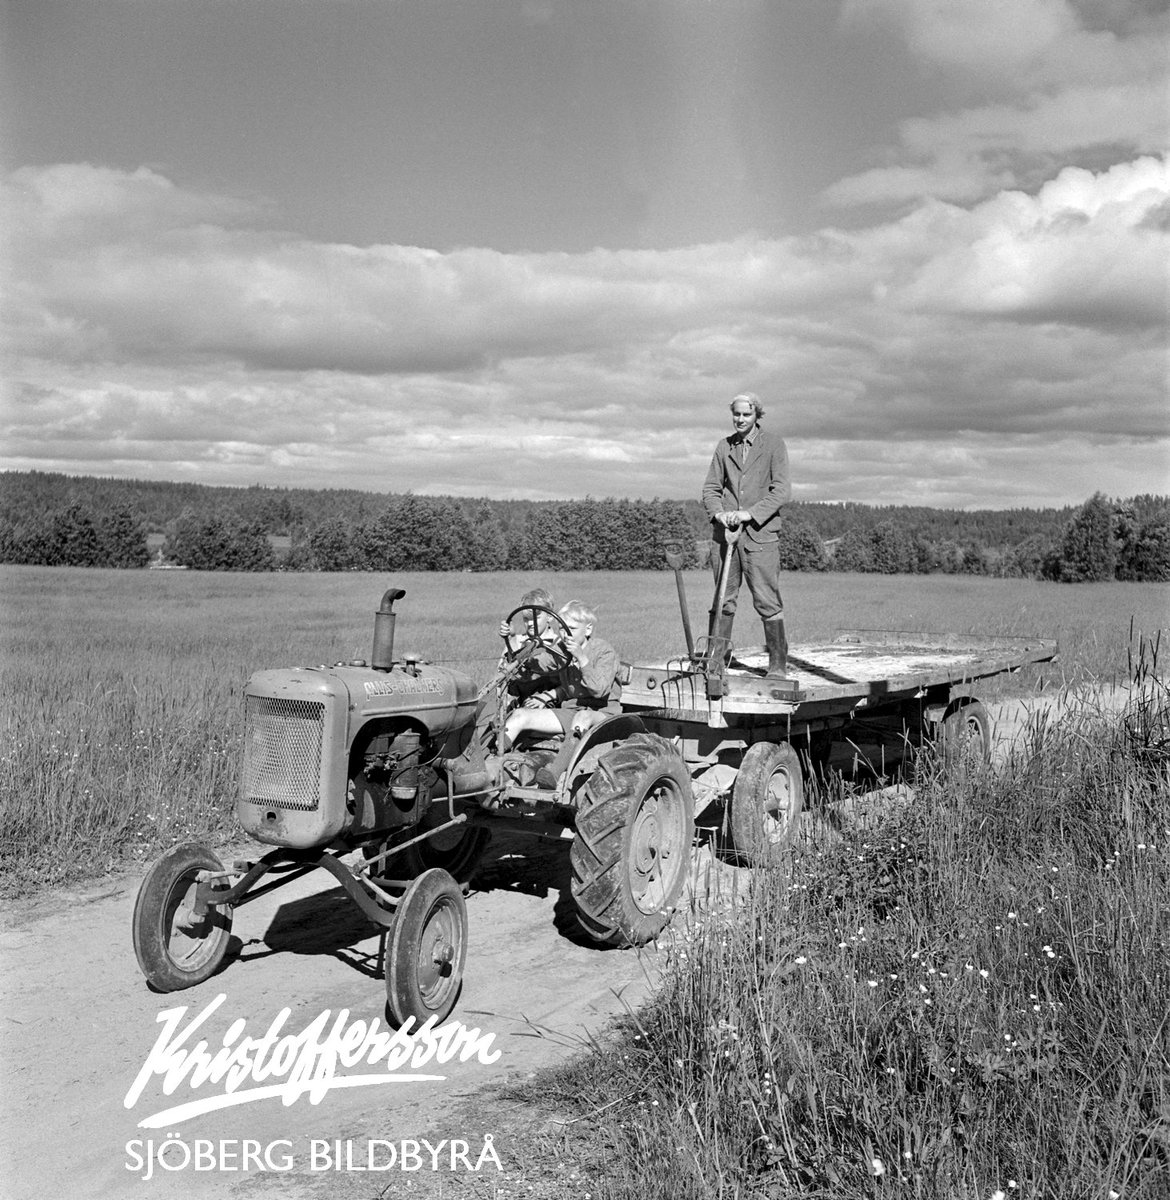 Klart pojkarna ska köra traktor. Året är 1949 och i Dala-Floda rullar traktorn förbi fotografen med barnen vid ratten. Pappa står på vagnsflaket.
Den ska börjas i tid...

#landsbygd #barn #traktor #barndom #Sverige